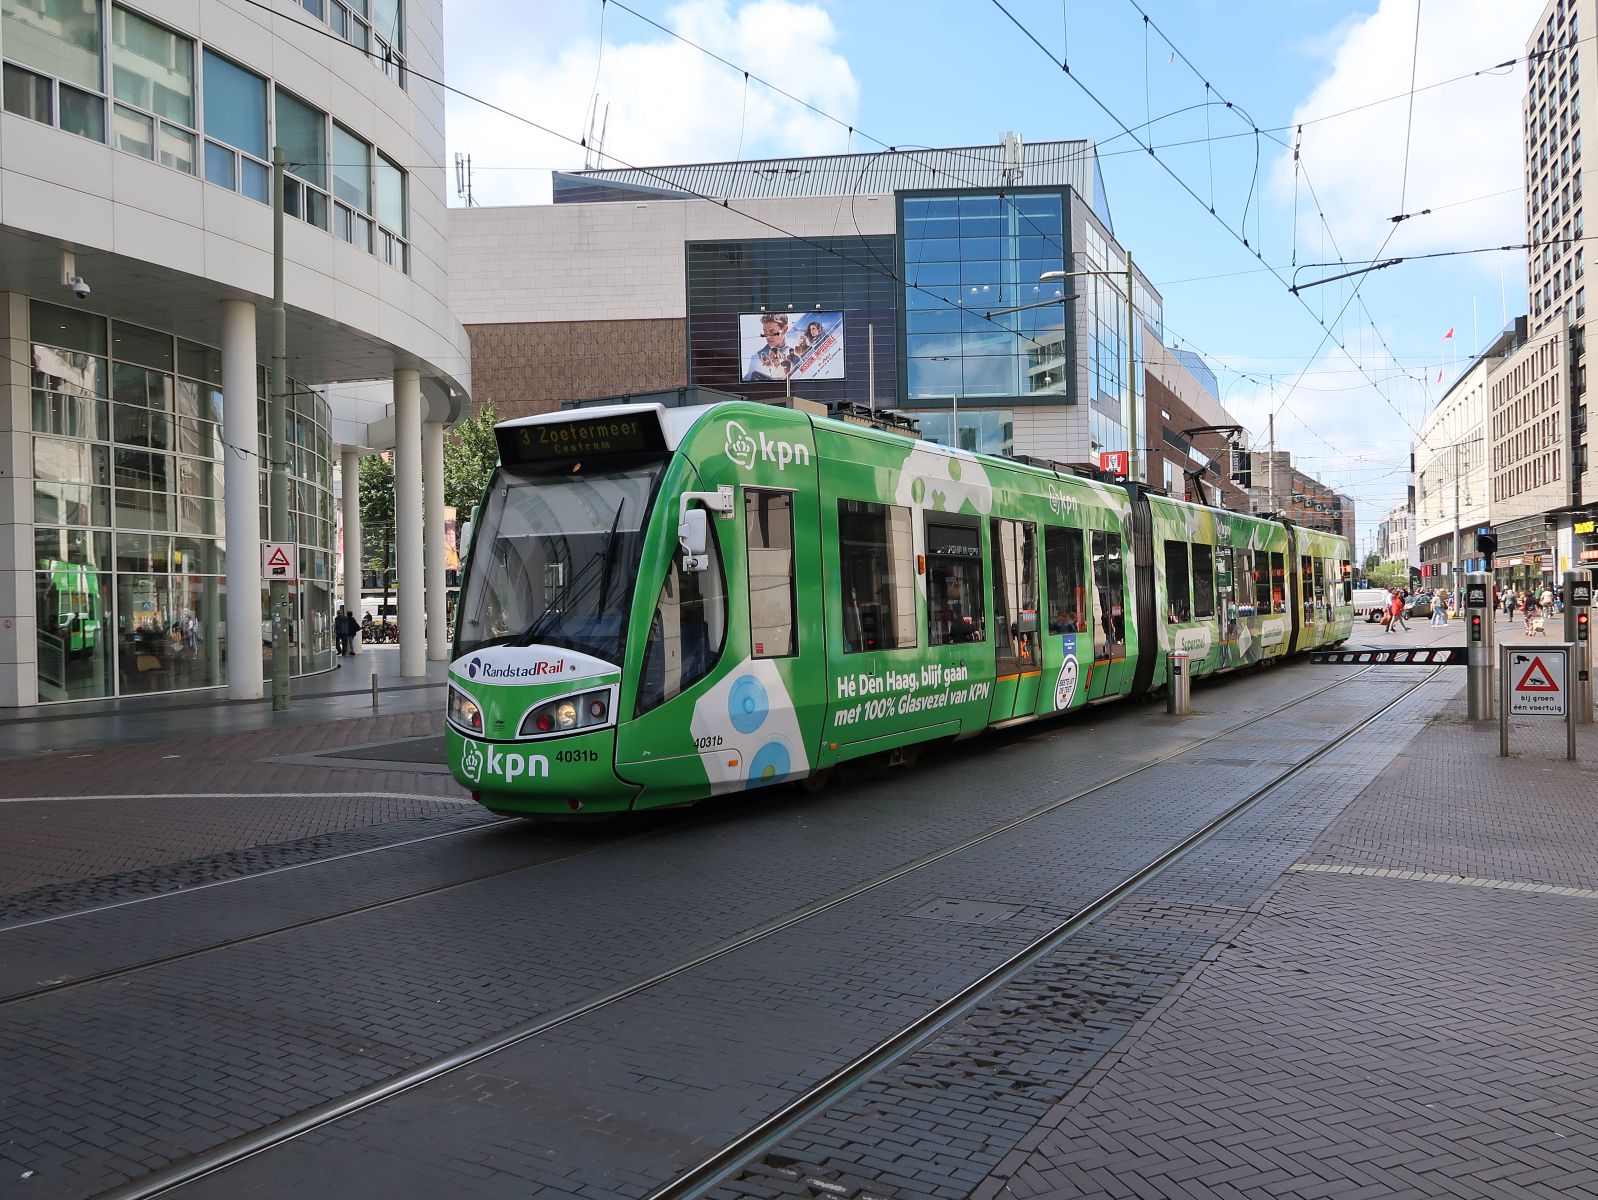 HTM Randstadrail Strassenbahn 4031 mit KPN Werbung. Kalvermarkt, Den Haag 13-07-2023.

HTM Randstadrail tram 4031 met KPN reclame. Kalvermarkt, Den Haag 13-07-2023.